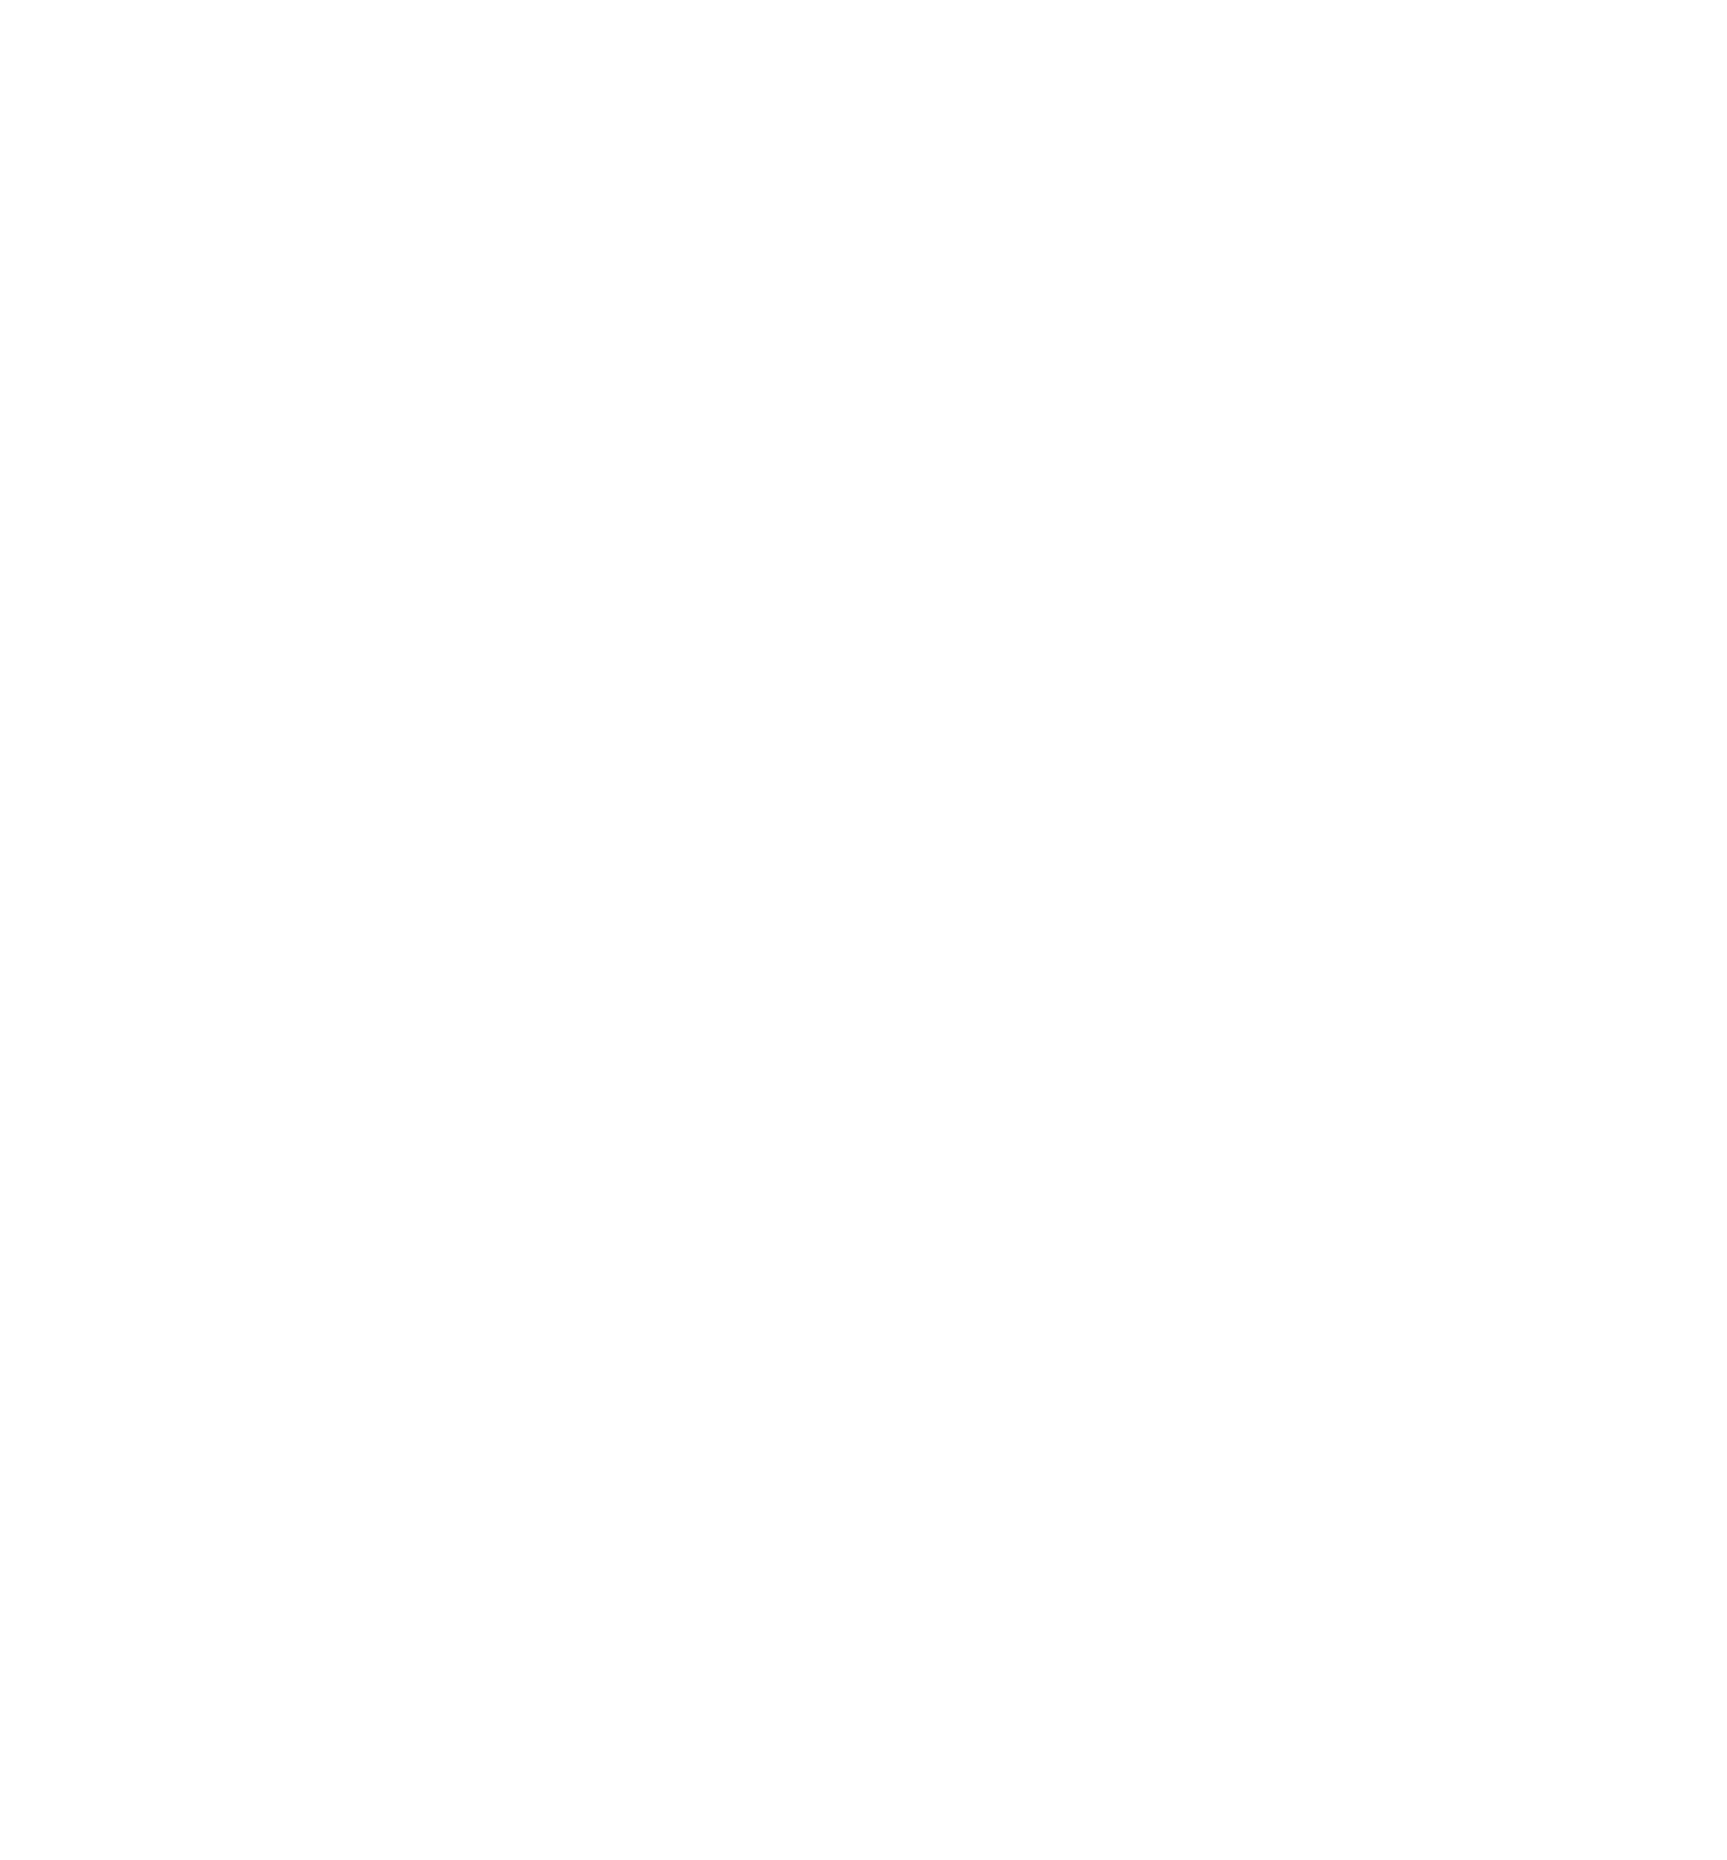 Puntos de recarga para coches eléctricos